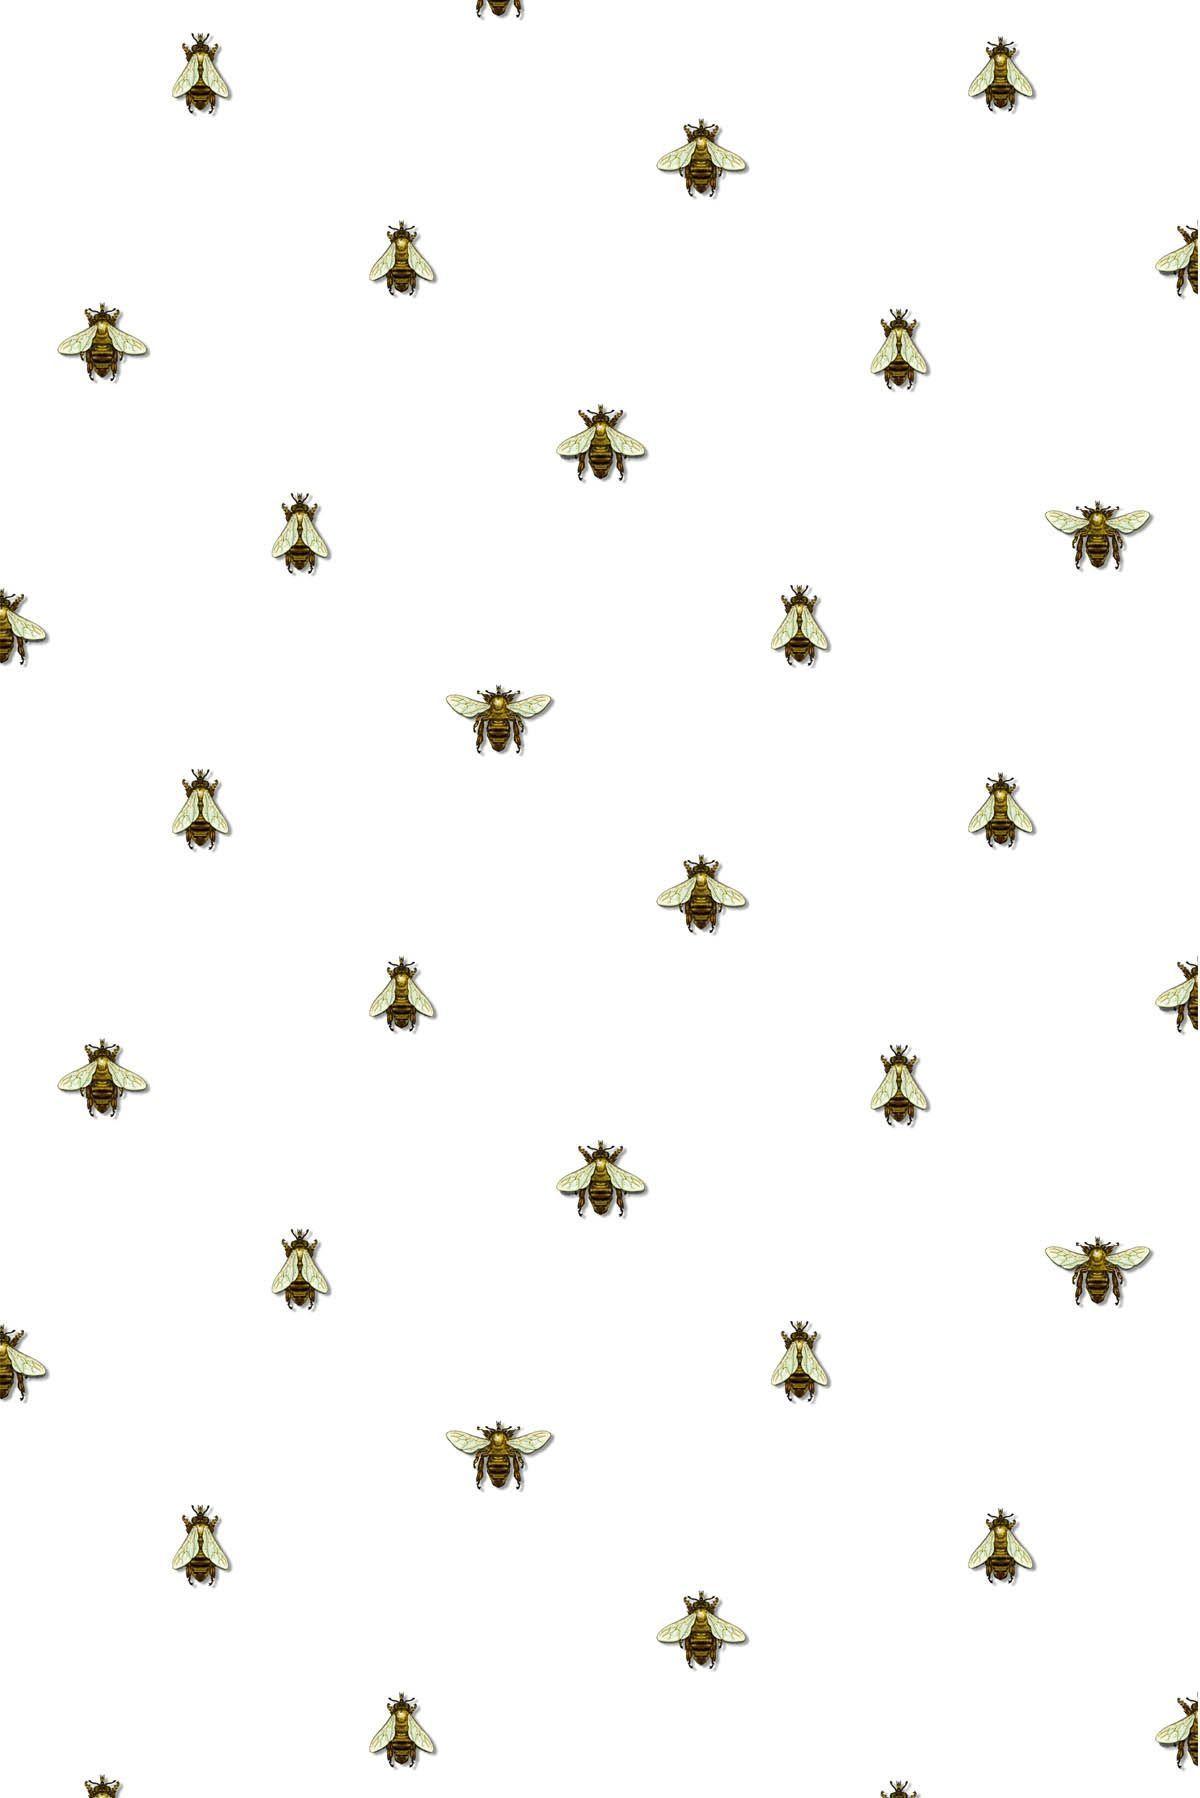 3d Wallpaper Iphone Bee Image Num 14